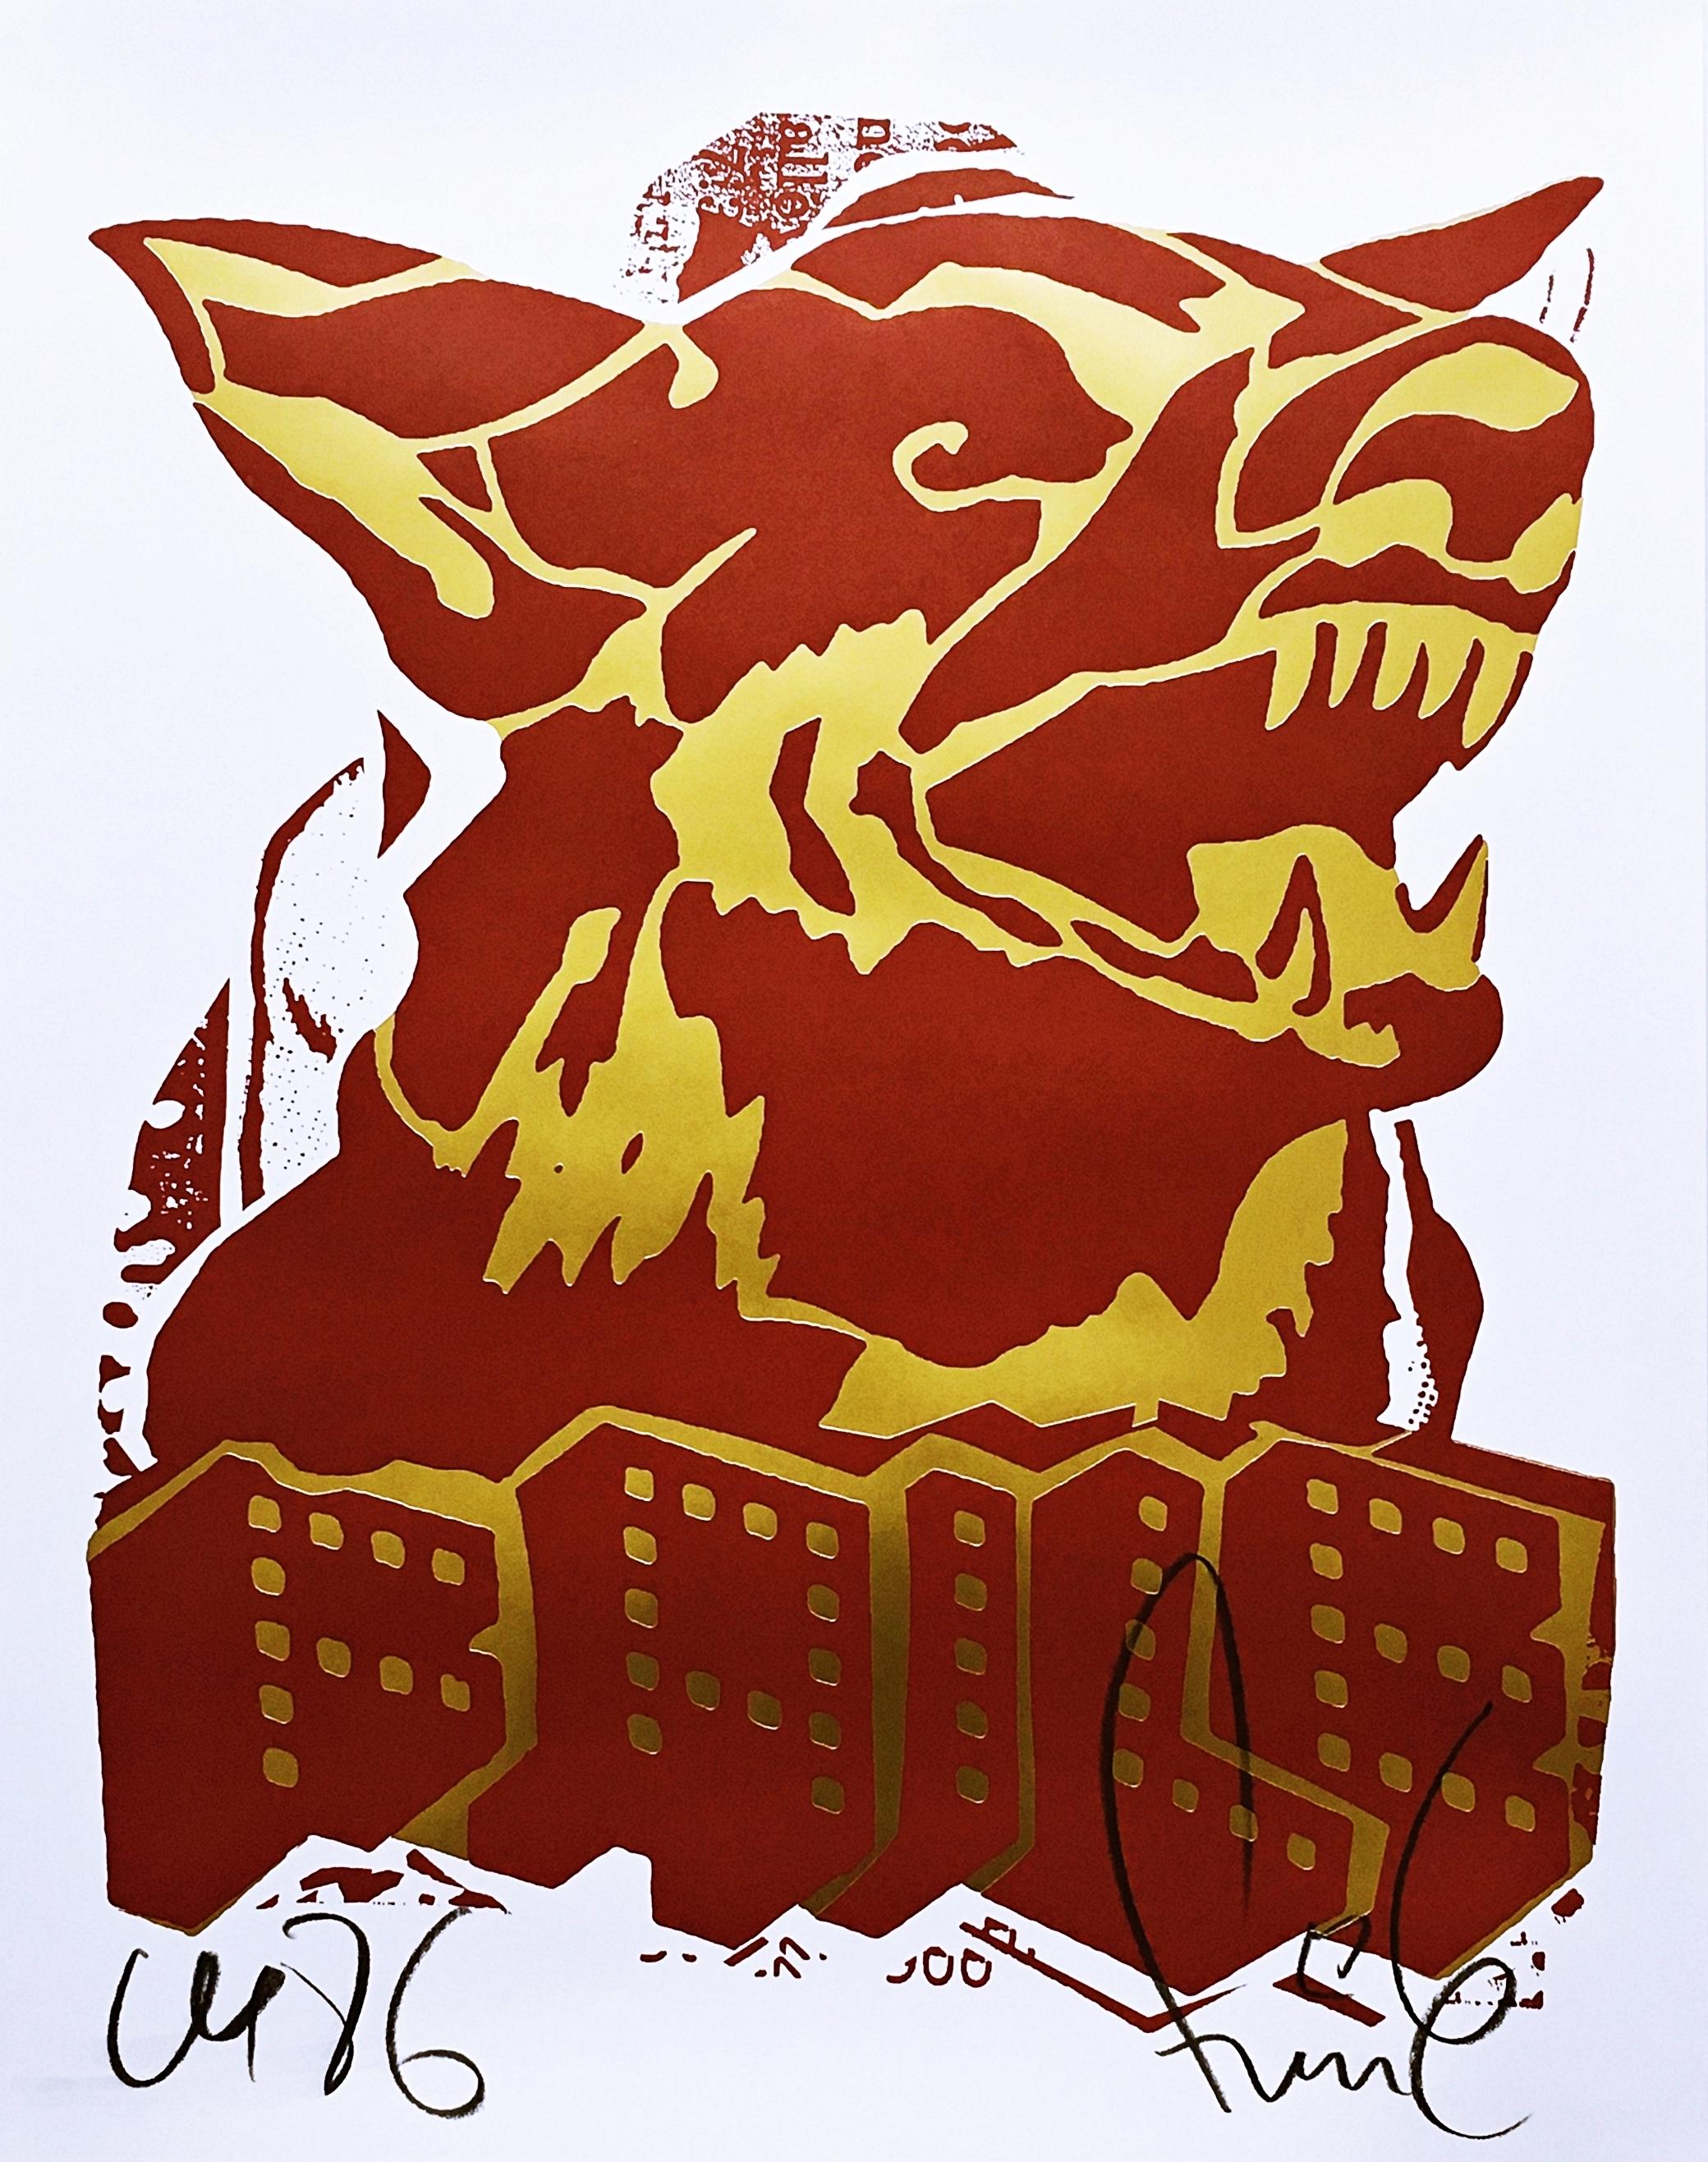 Abstract Print Faile - Le chien rouge (impression à l'édition limitée avec feuille d'or) par de célèbres artistes pop art de la rue 